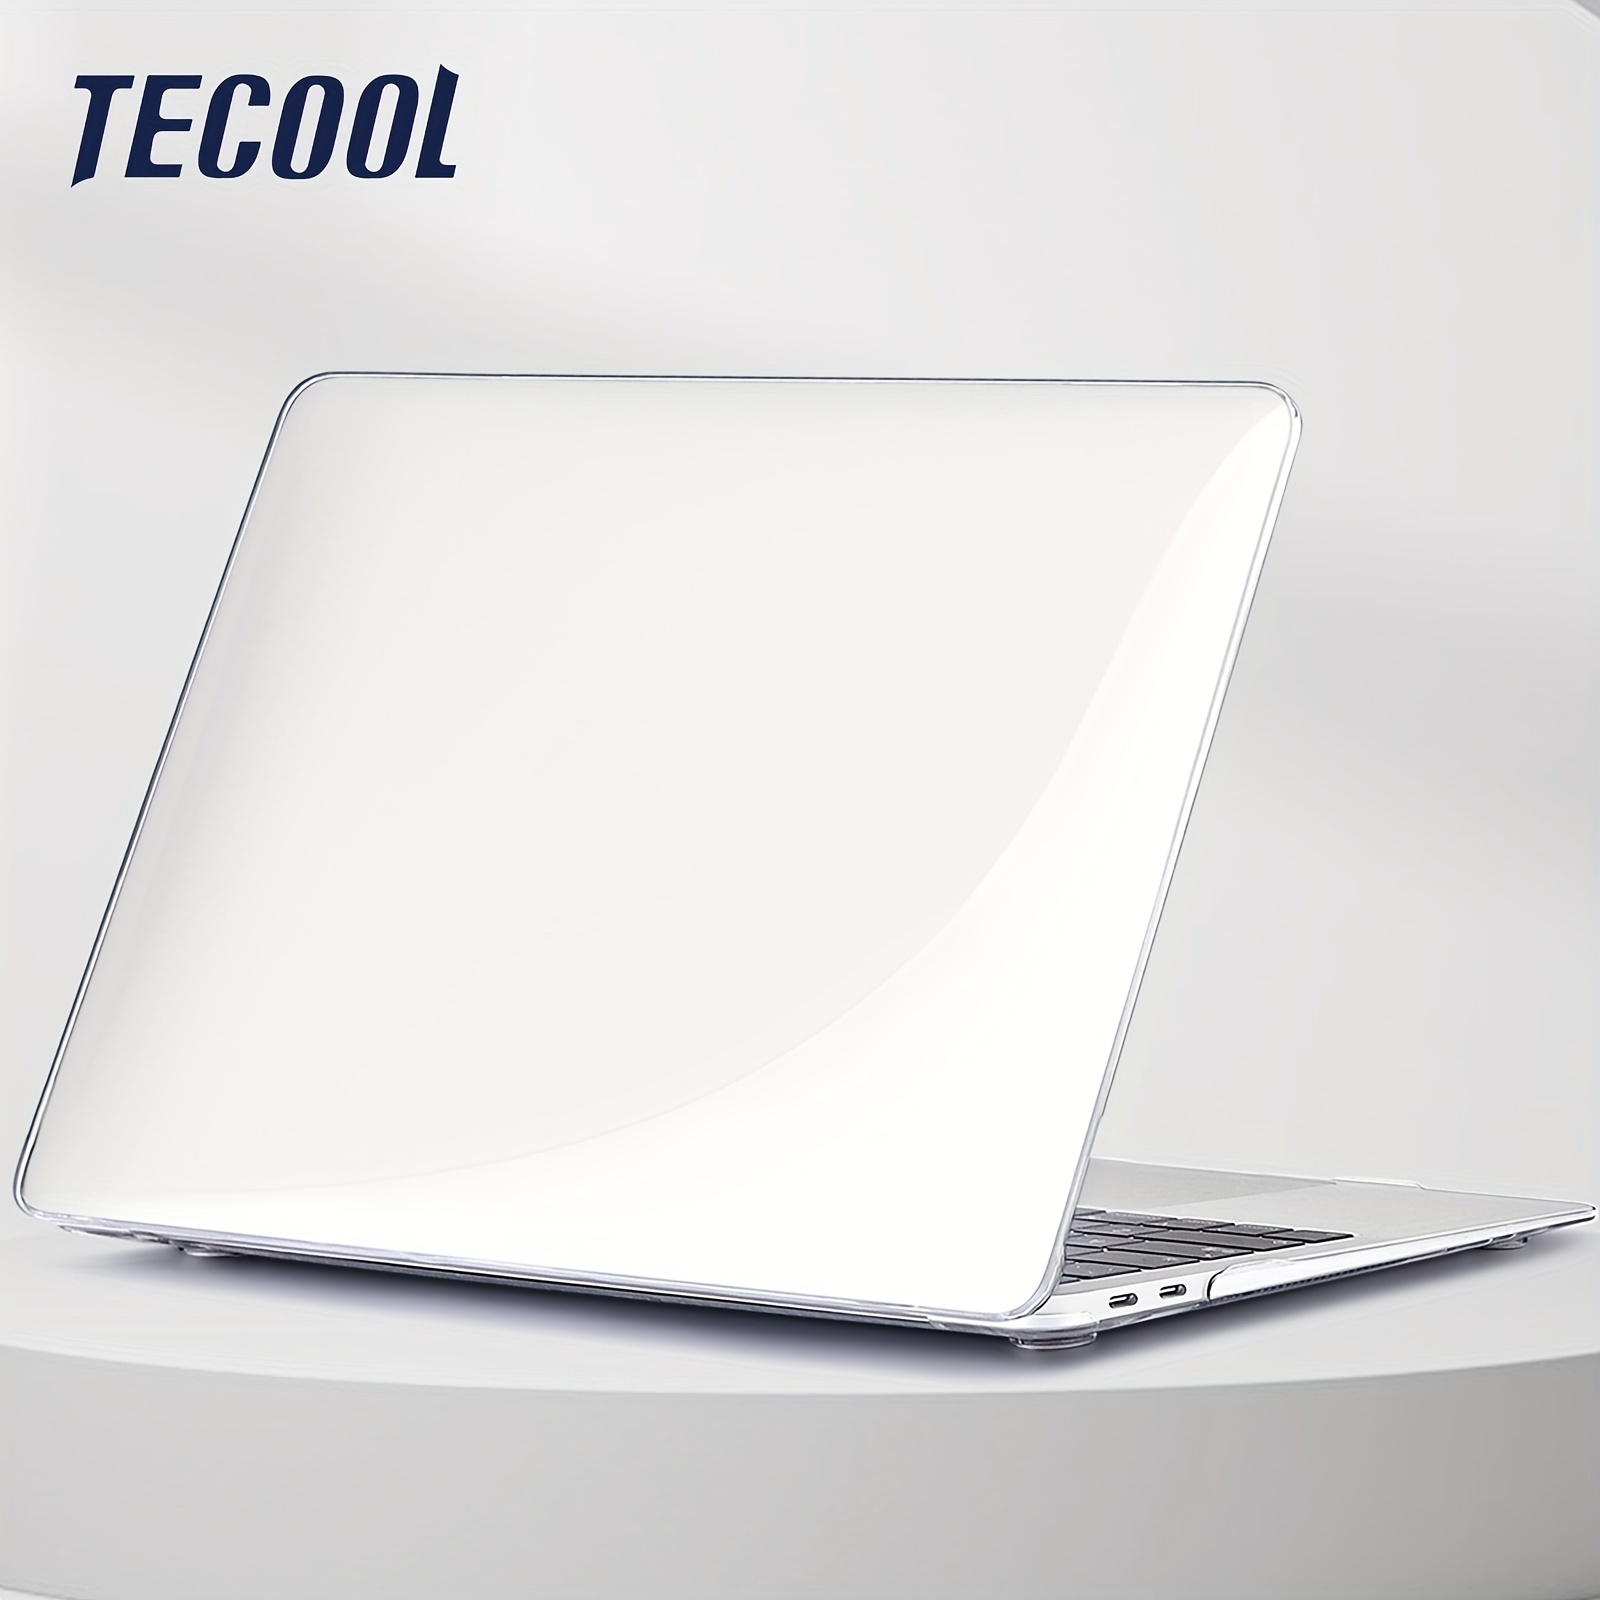 TECOOL 13 Pouces Housse Cuir pour Pochette pour Macbook Air/Pro 13 M1 M2  2012-2020